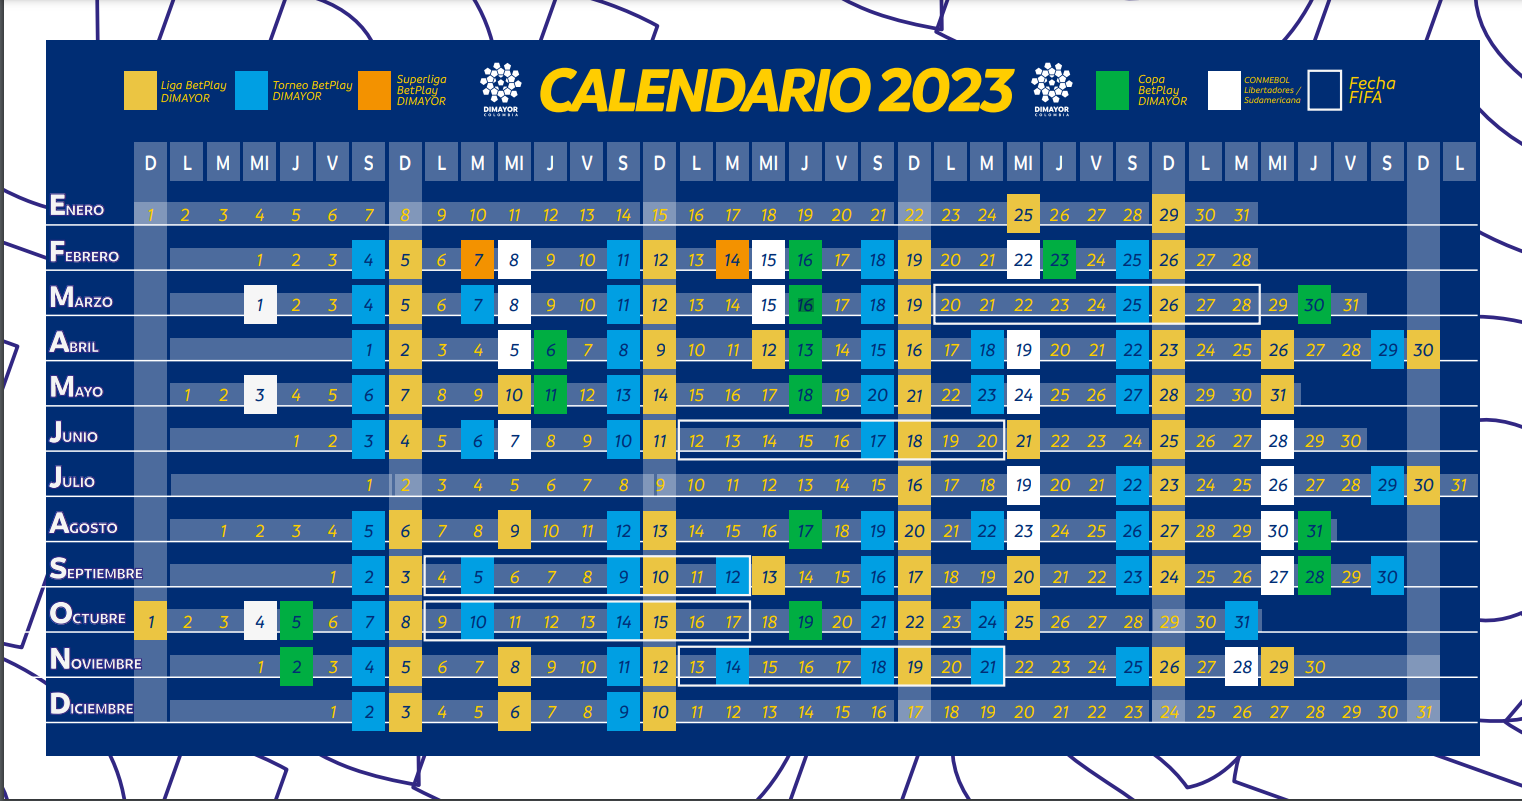 Calendario de las competencias masculinas de Dimayor en 2023